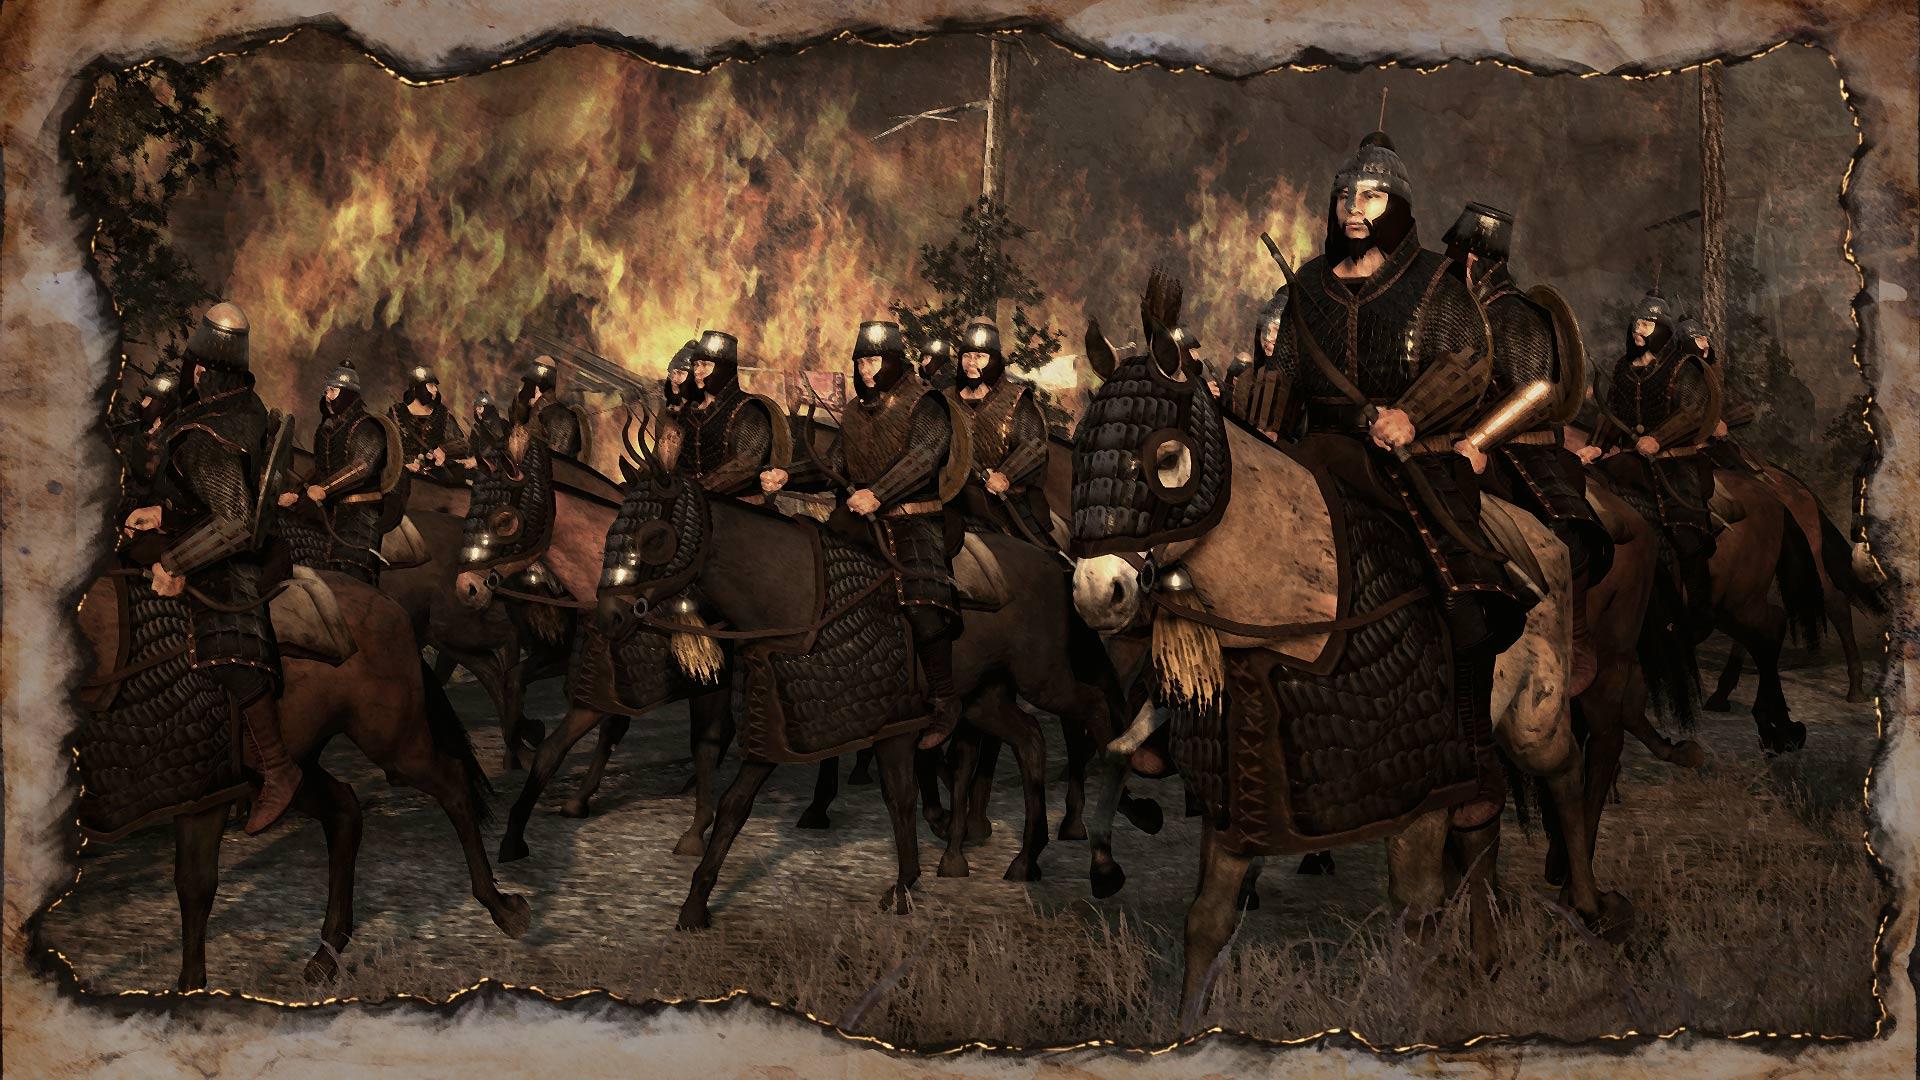 Attila Total War Wallpapers - Top Free Attila Total War Backgrounds